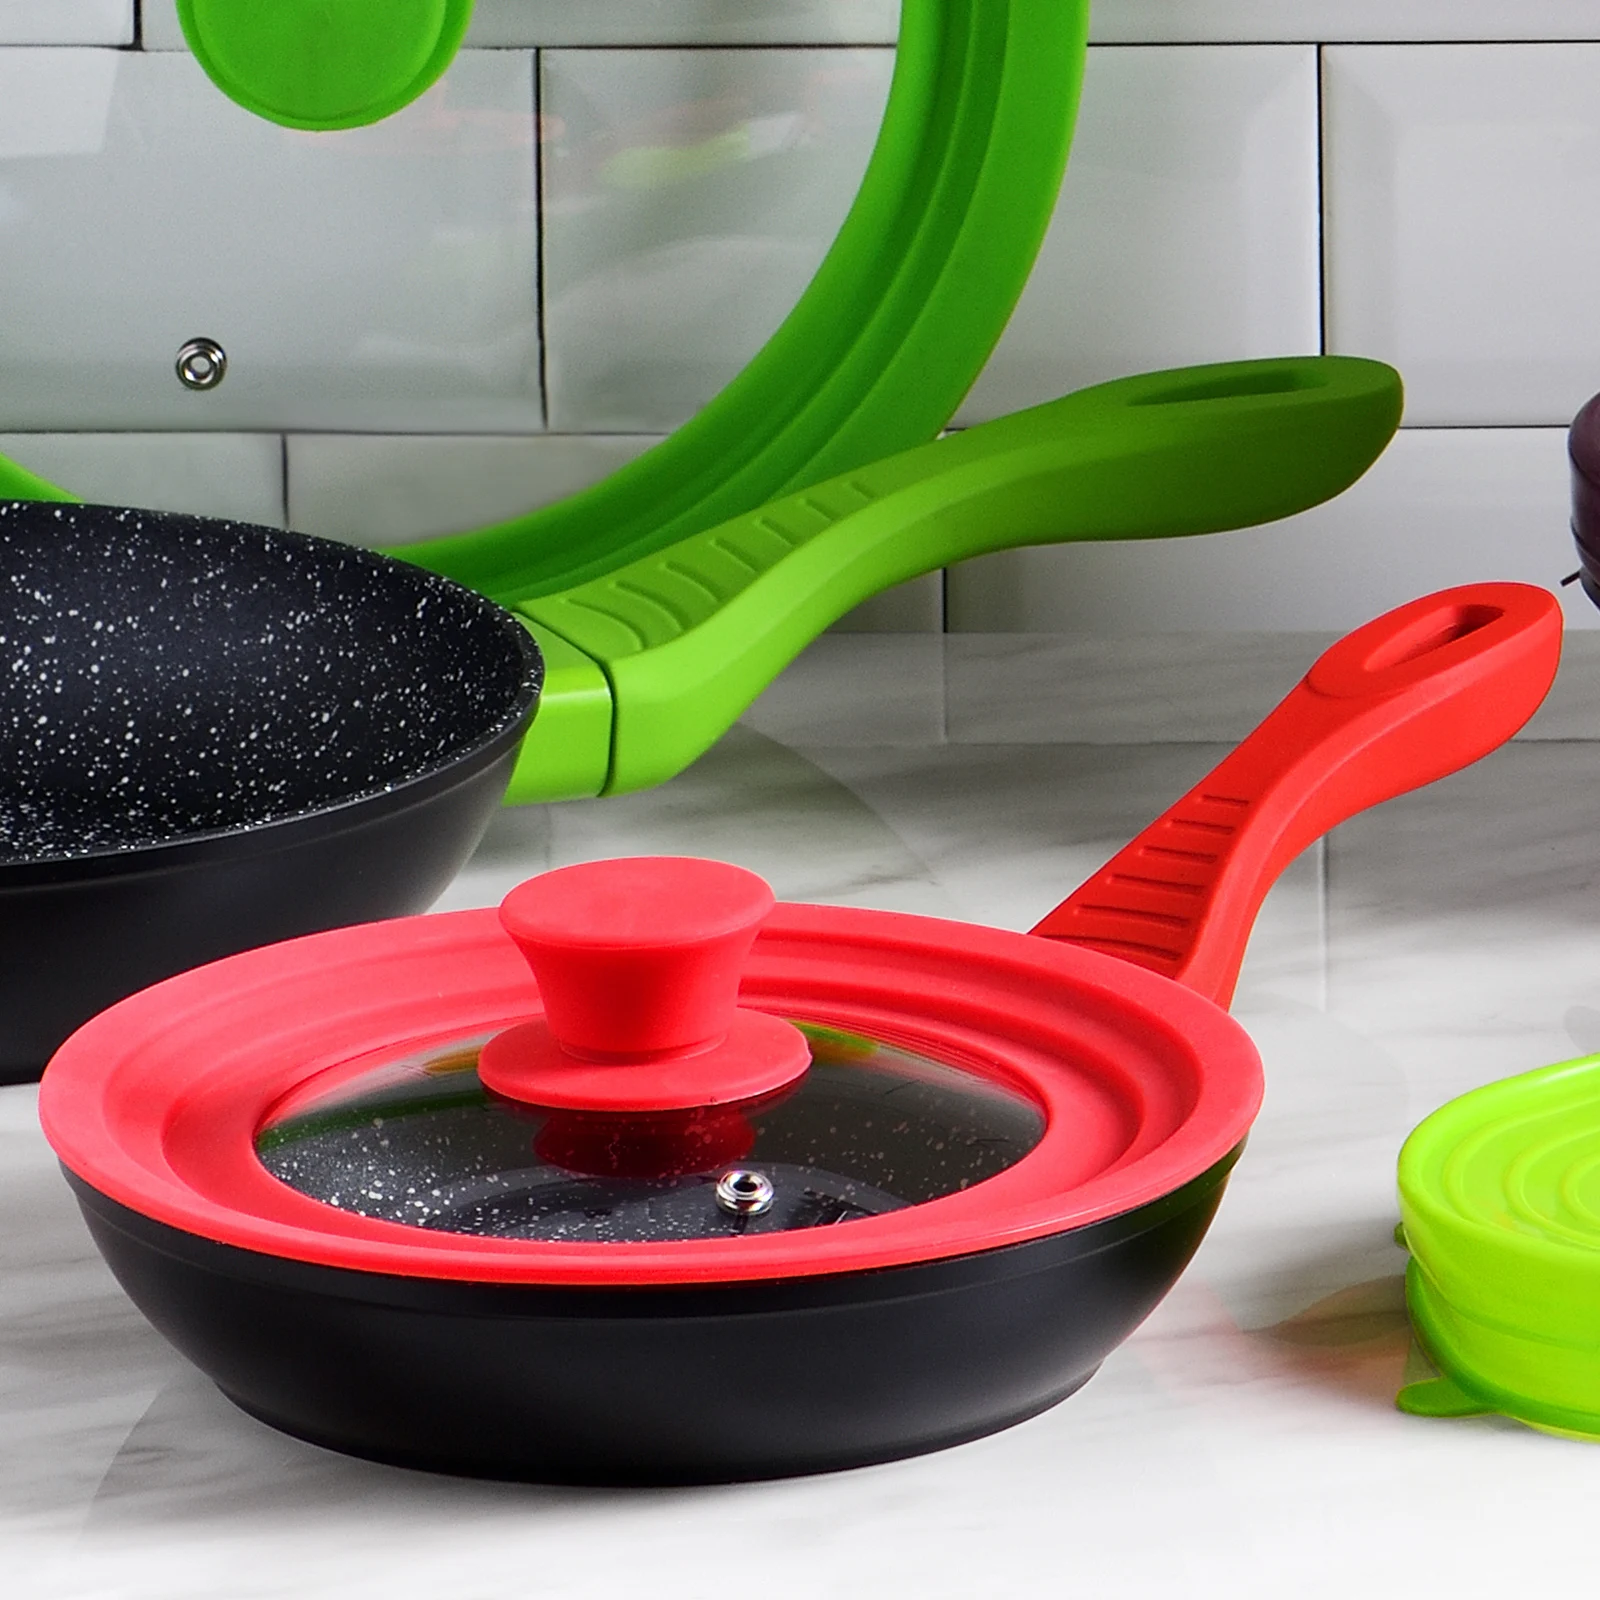 3 utensilios de cocina en nylon San Ignacio PK1904 Pack 2 tapas universales de cristal en color rojo y verde 